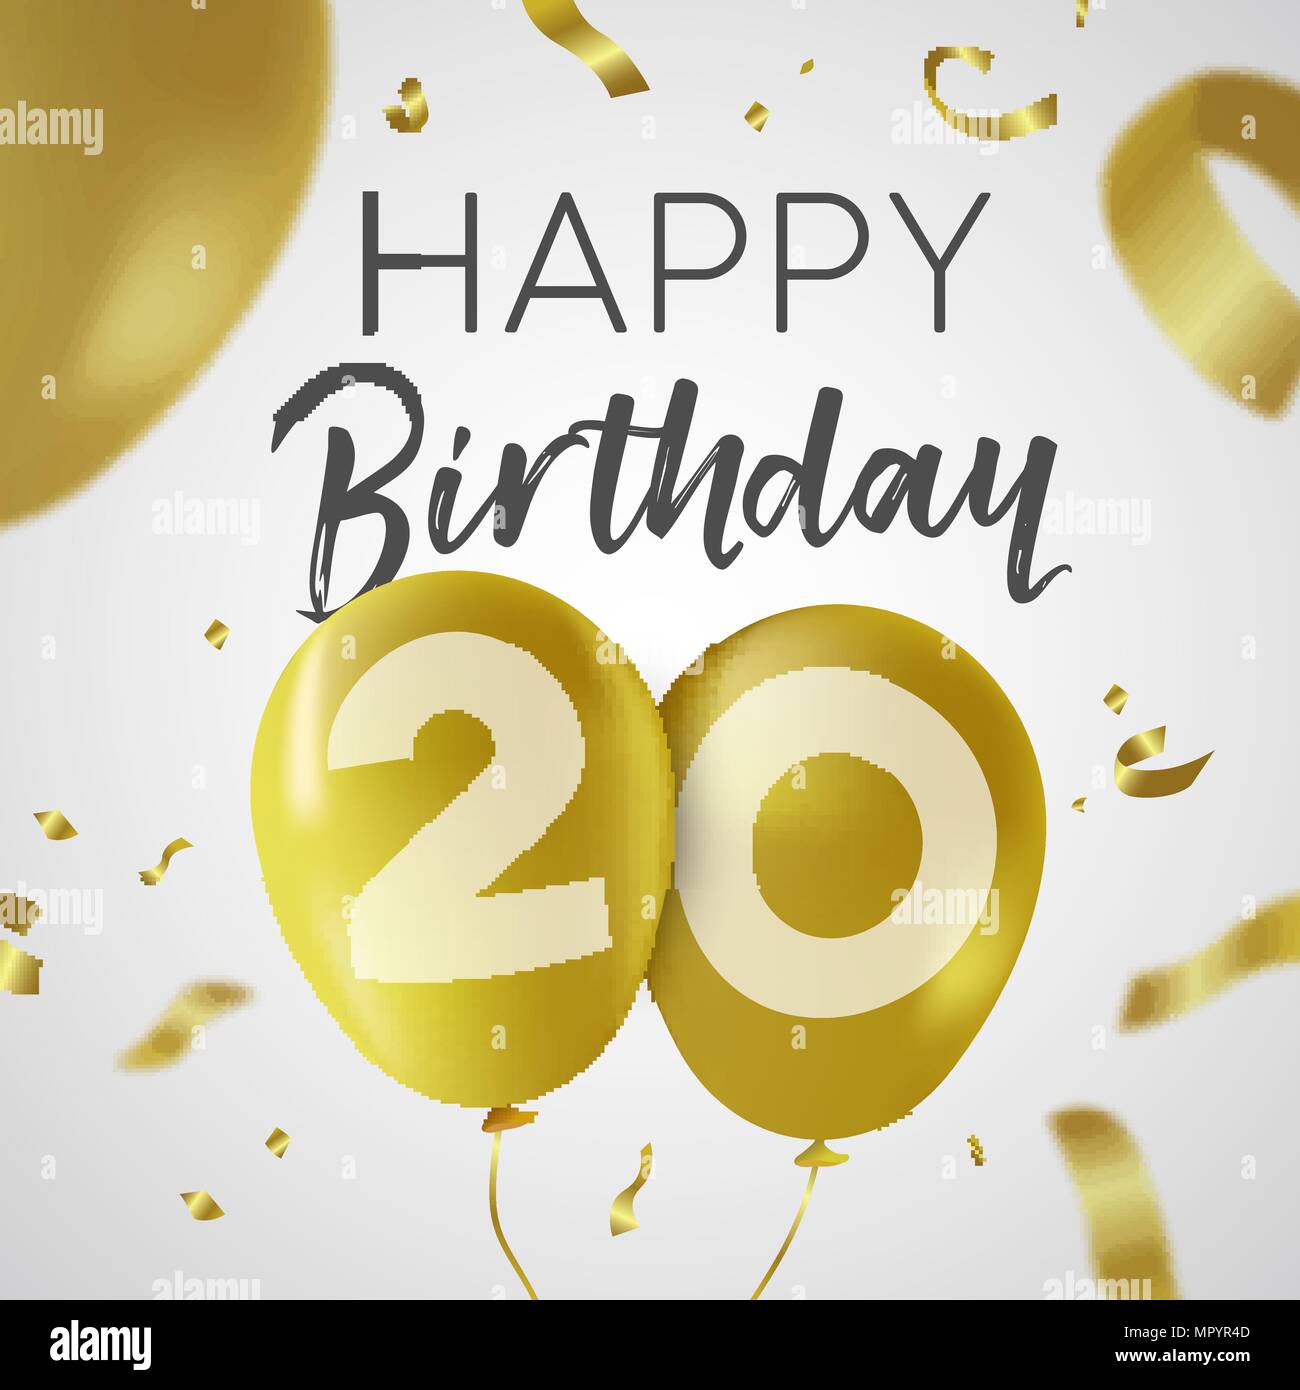 Happy Birthday 20 zwanzig Jahre, Luxus Design mit Gold Ballon Anzahl und golden Konfetti Dekoration. Ideal für Party Einladung oder Grußkarte. EP Stock Vektor